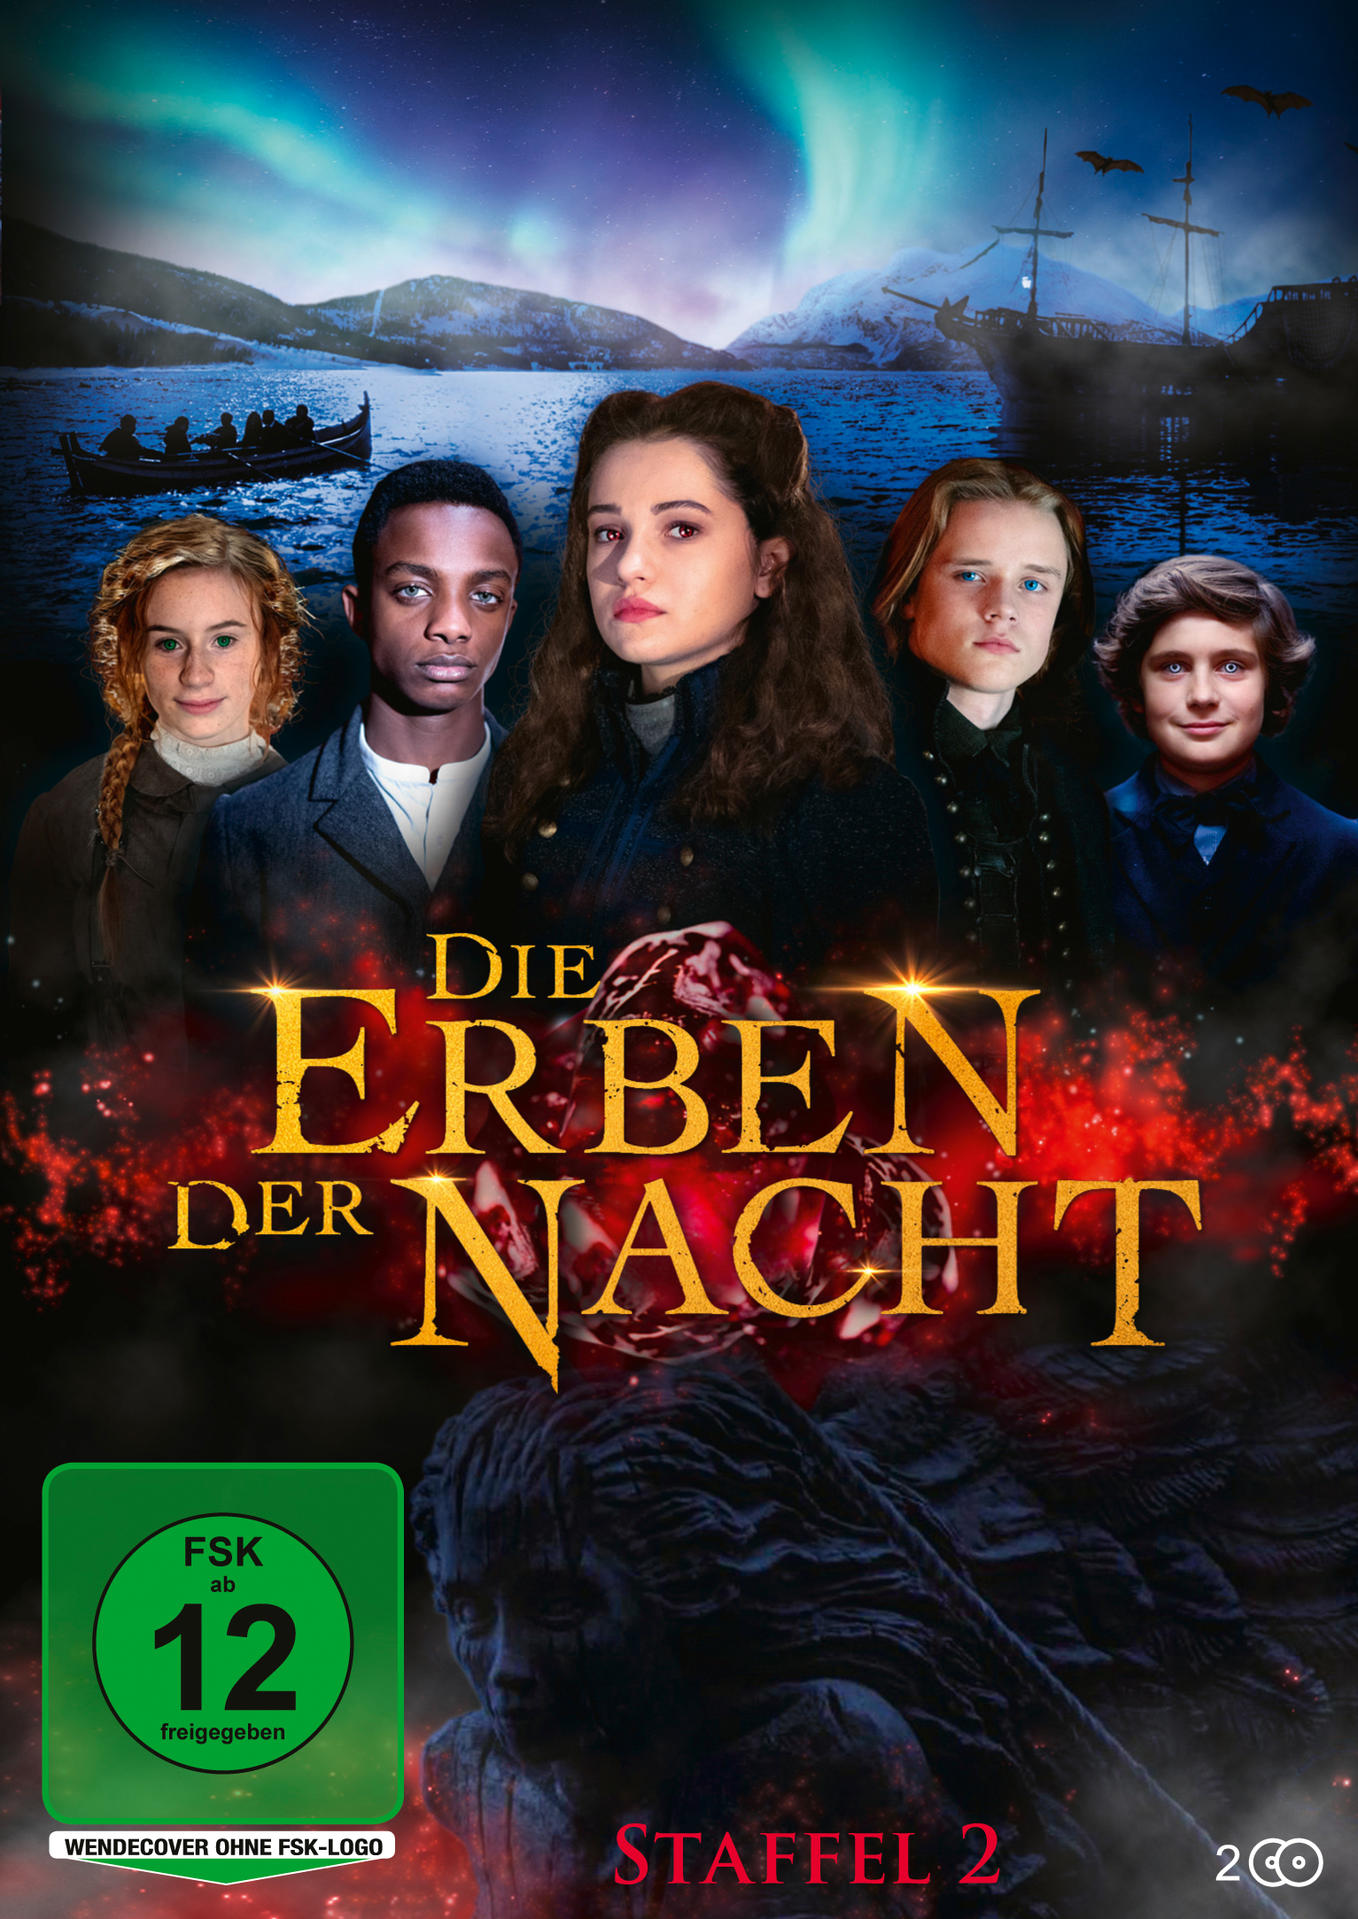 Nacht DVD Erben - der 2 Staffel Die